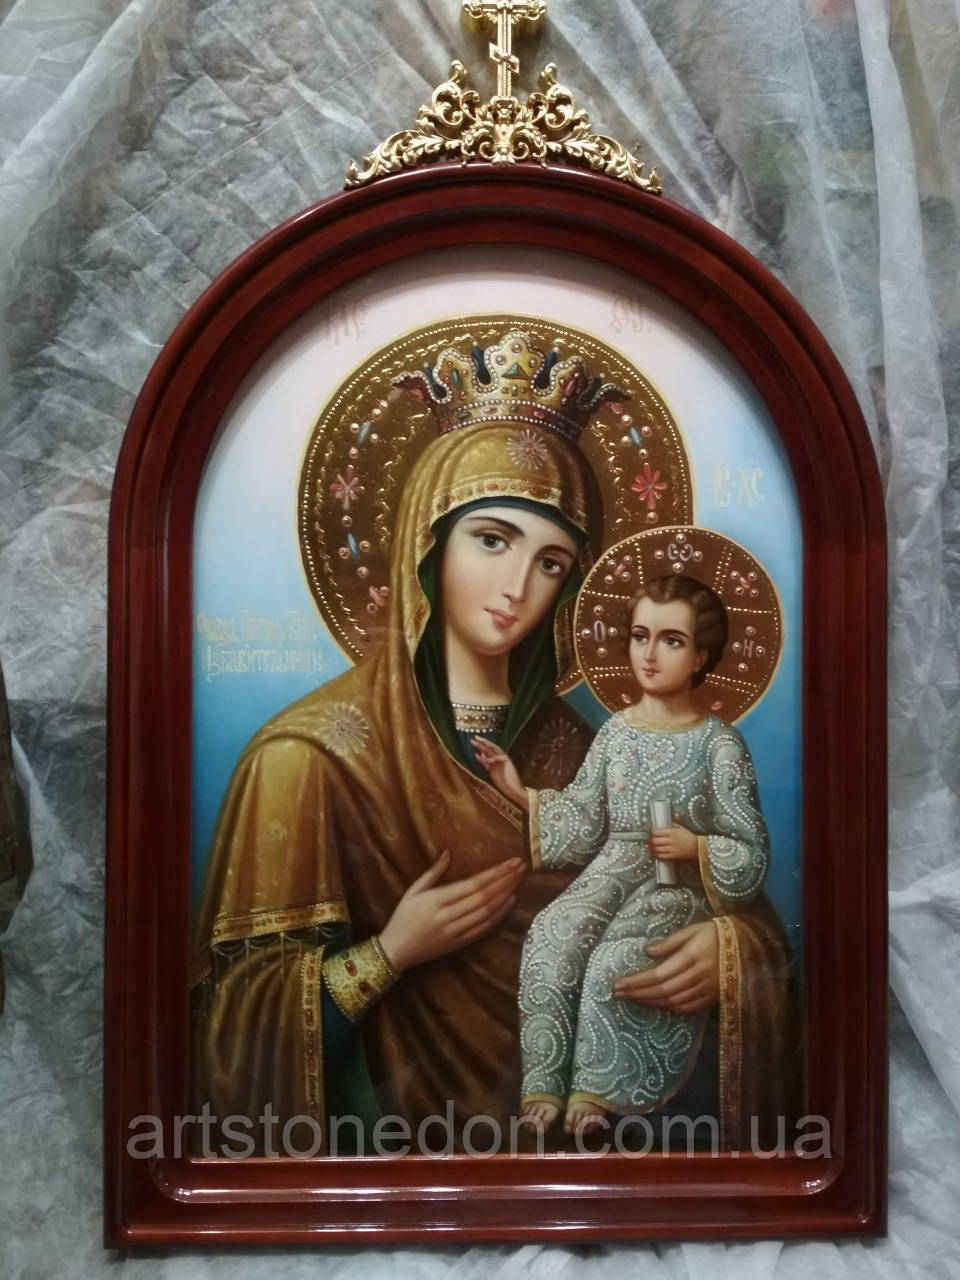 Ікона Божої Матері « Визволителька» ("Избавительница") 80*60 см